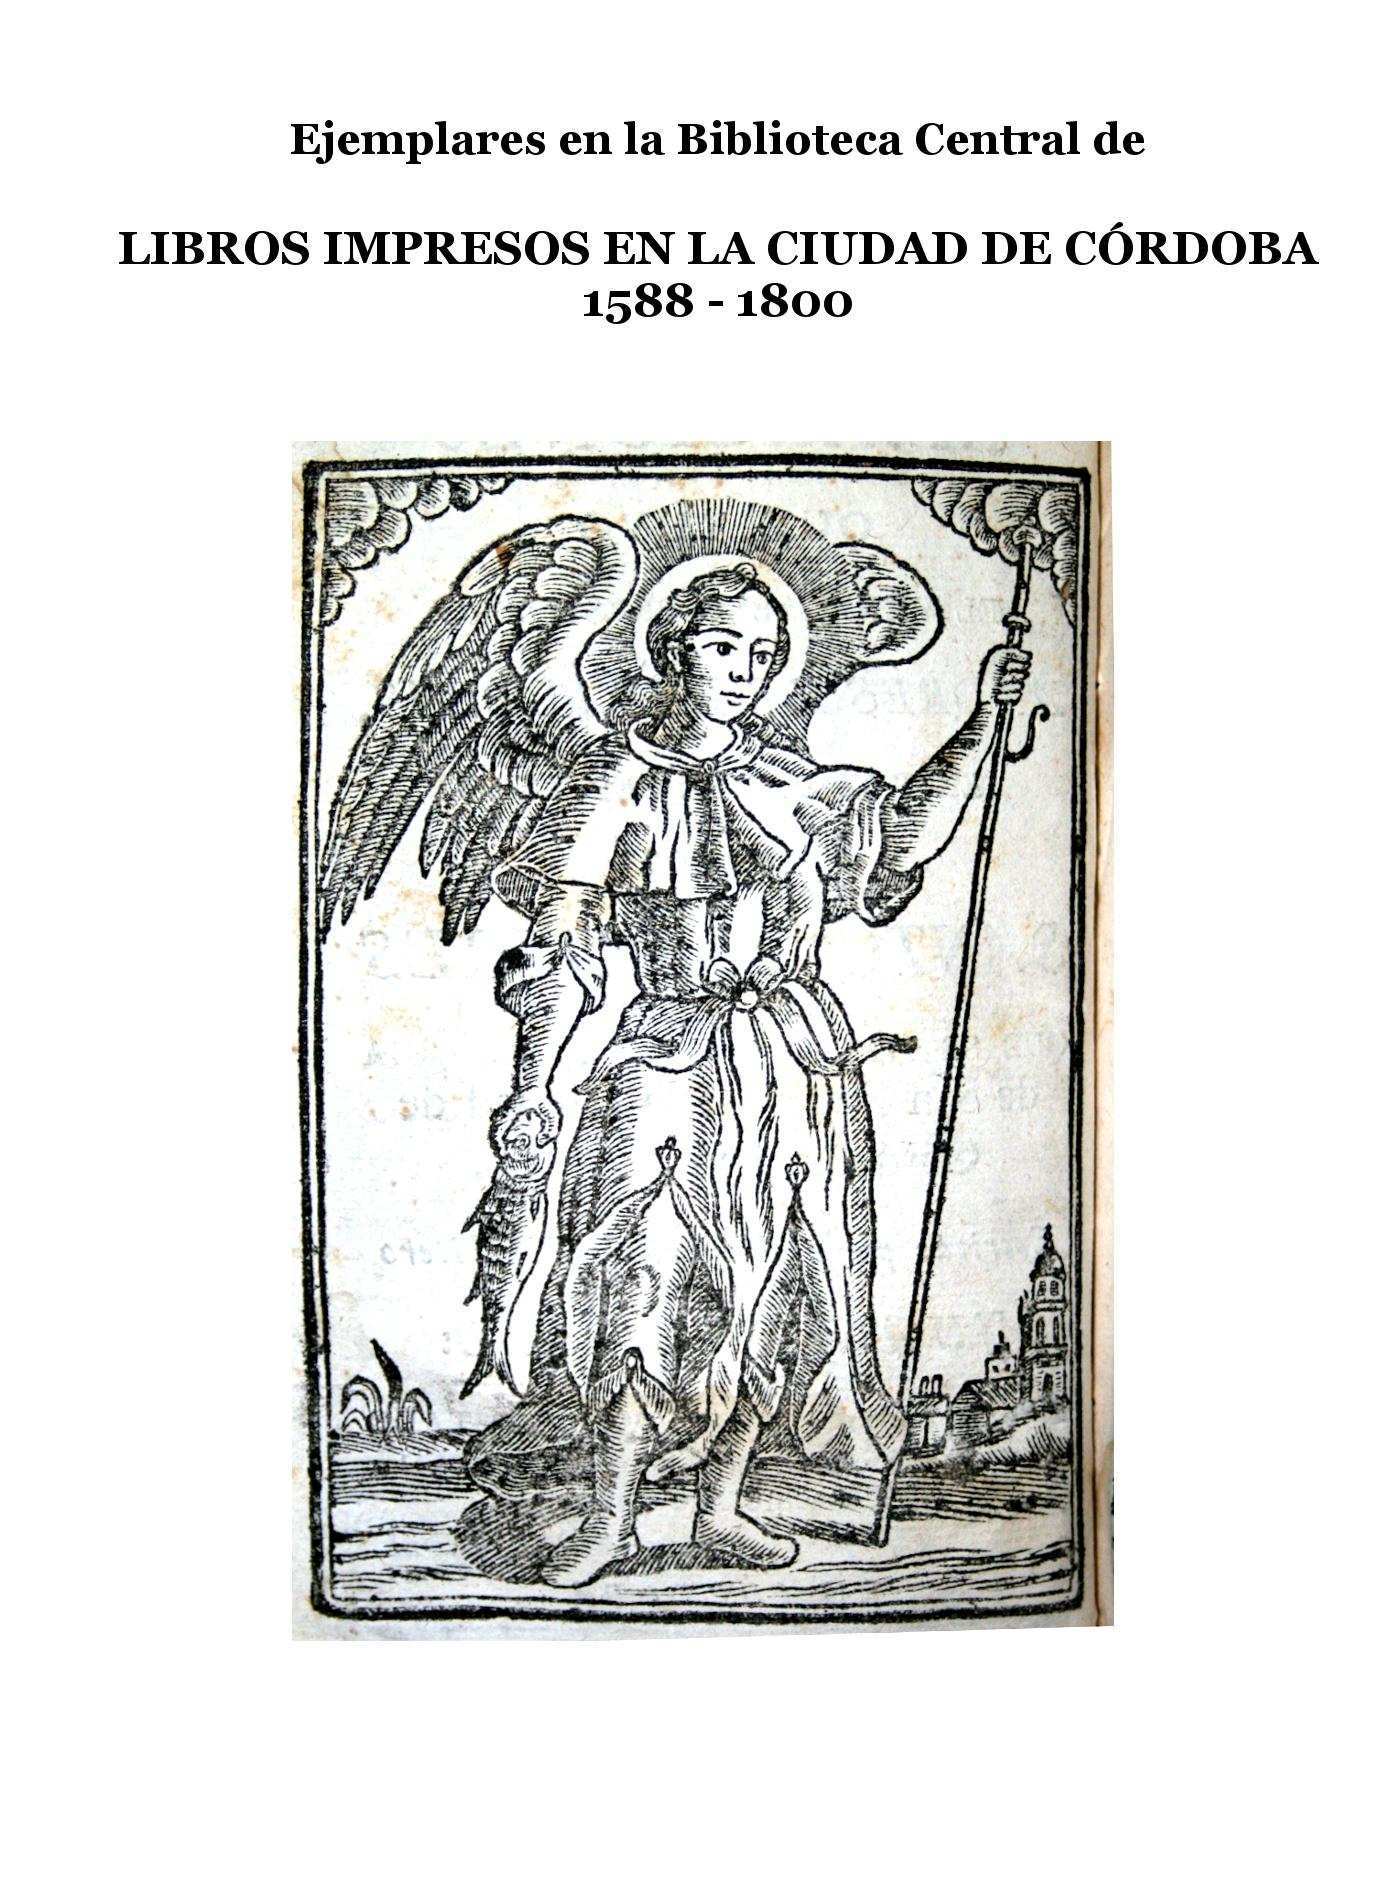 Imagen de portada del libro Ejemplares en la Biblioteca Central de libros impresos en Córdoba